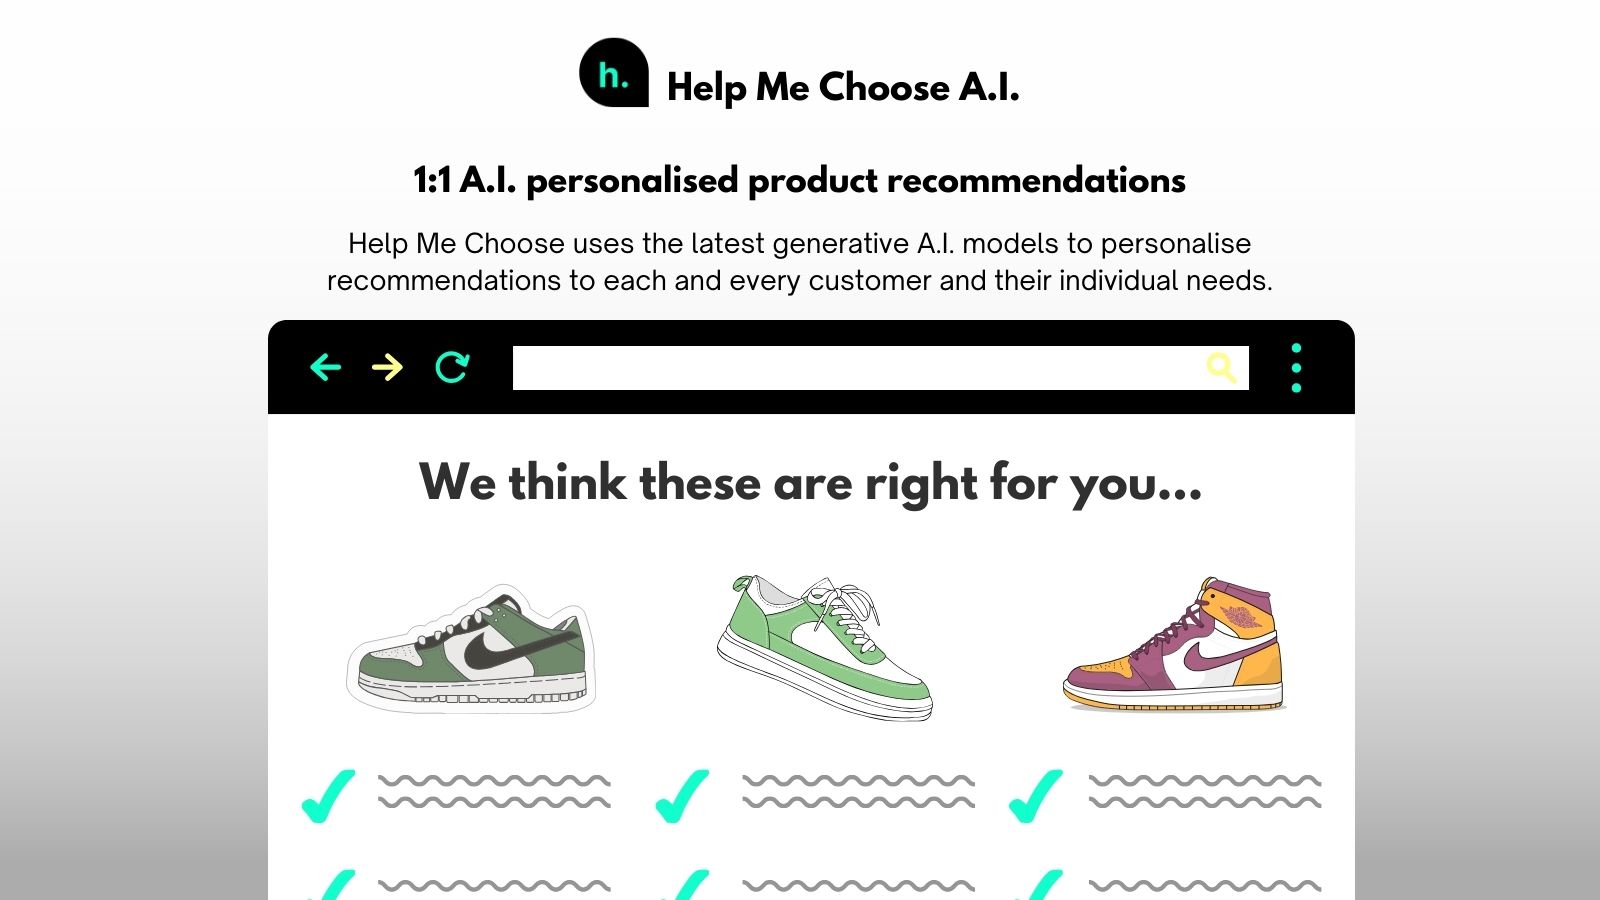 Use A.I. para guiar a los clientes de manera personalizada